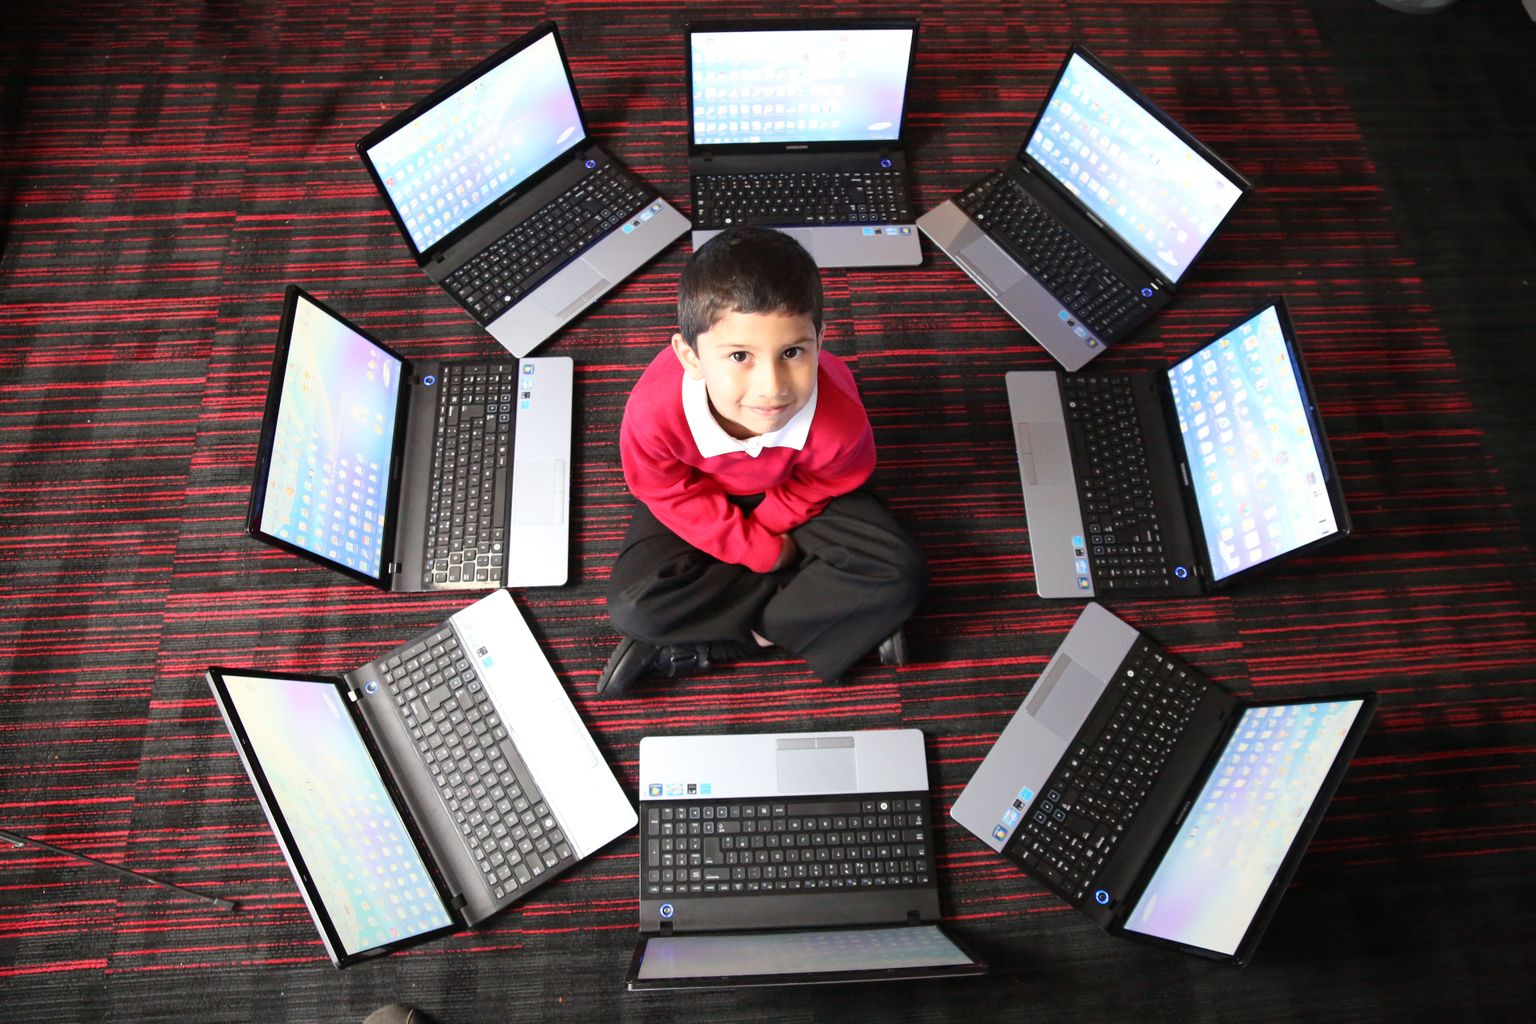 Ayan Qureshi peetakse lapsgeeniuseks, kuna ta suutis viieaastaselt läbida Microsofti eksami, mida kasutatakse enamasti ülikoolilõpeajate arvutioskuse testimiseks.